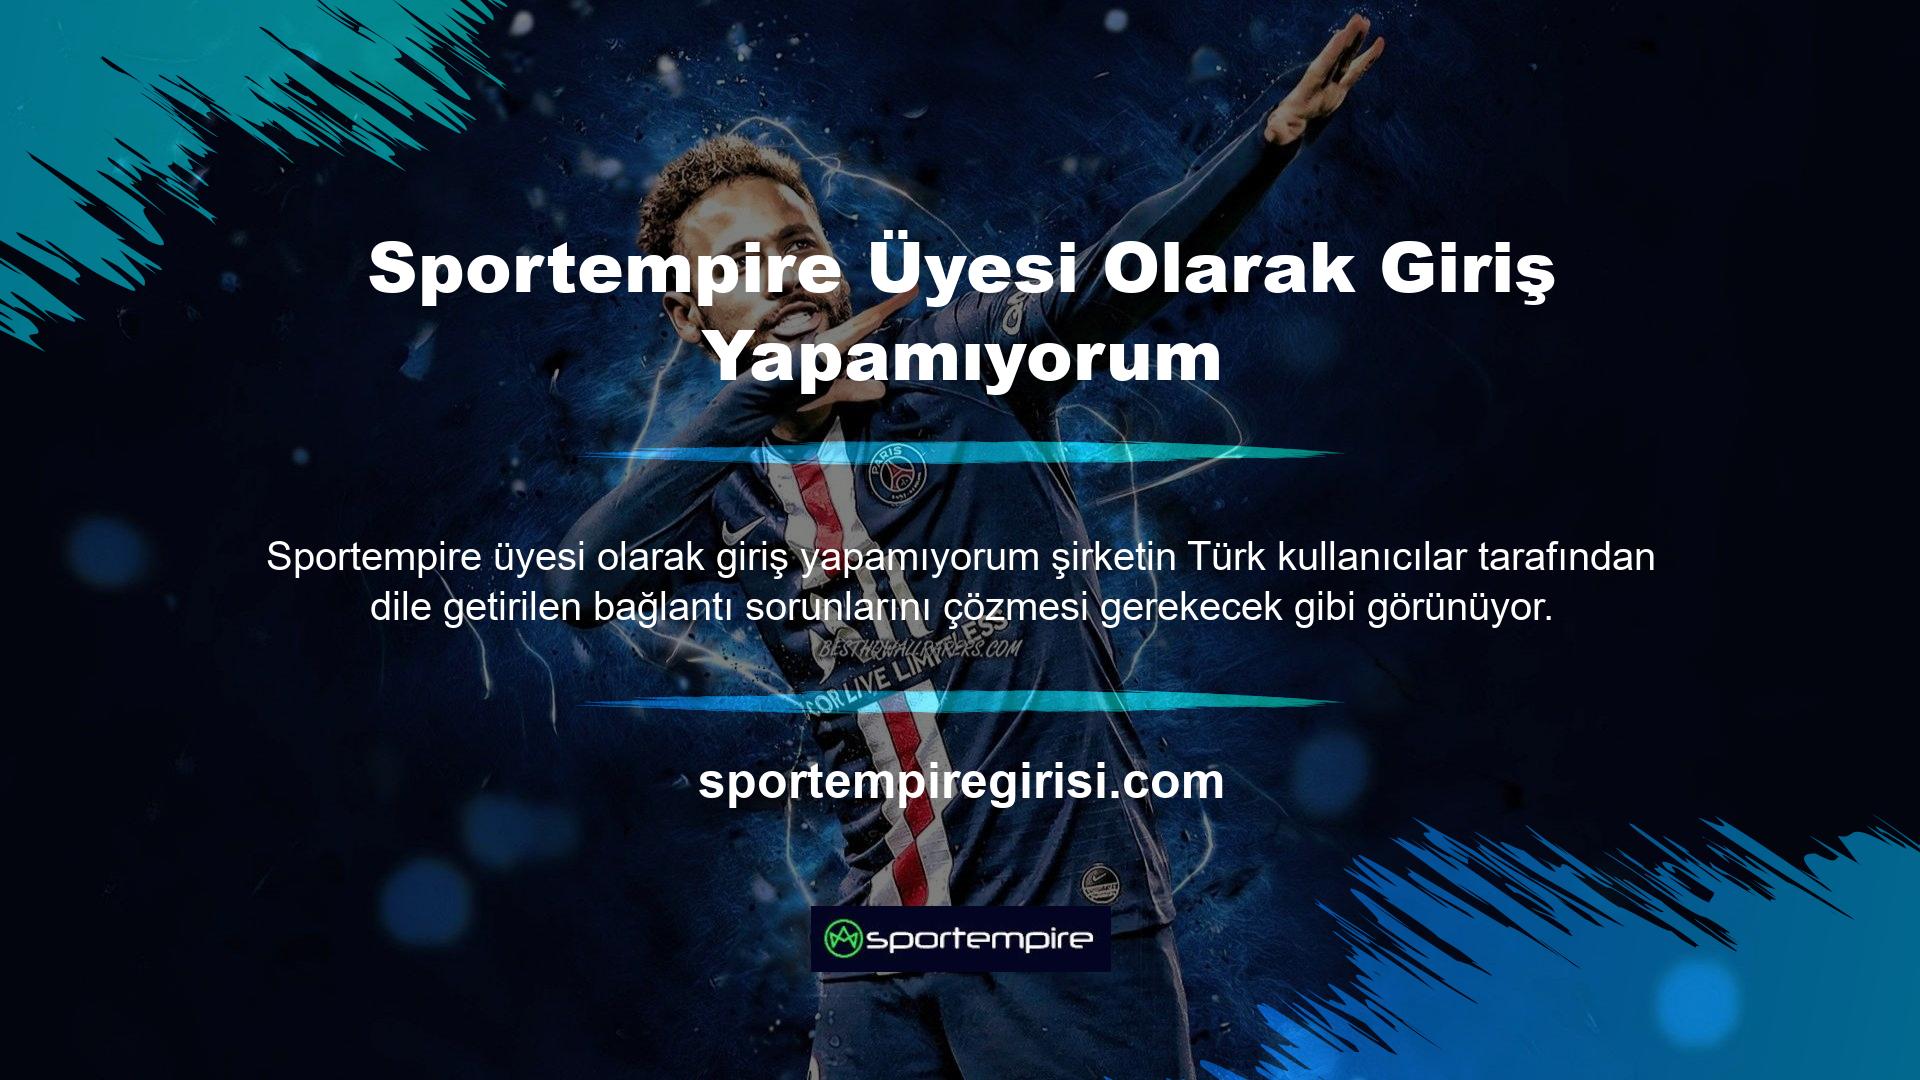 Sportempire web sitesindeki ticari faaliyetler Türk kanunlarına göre geçersizdir